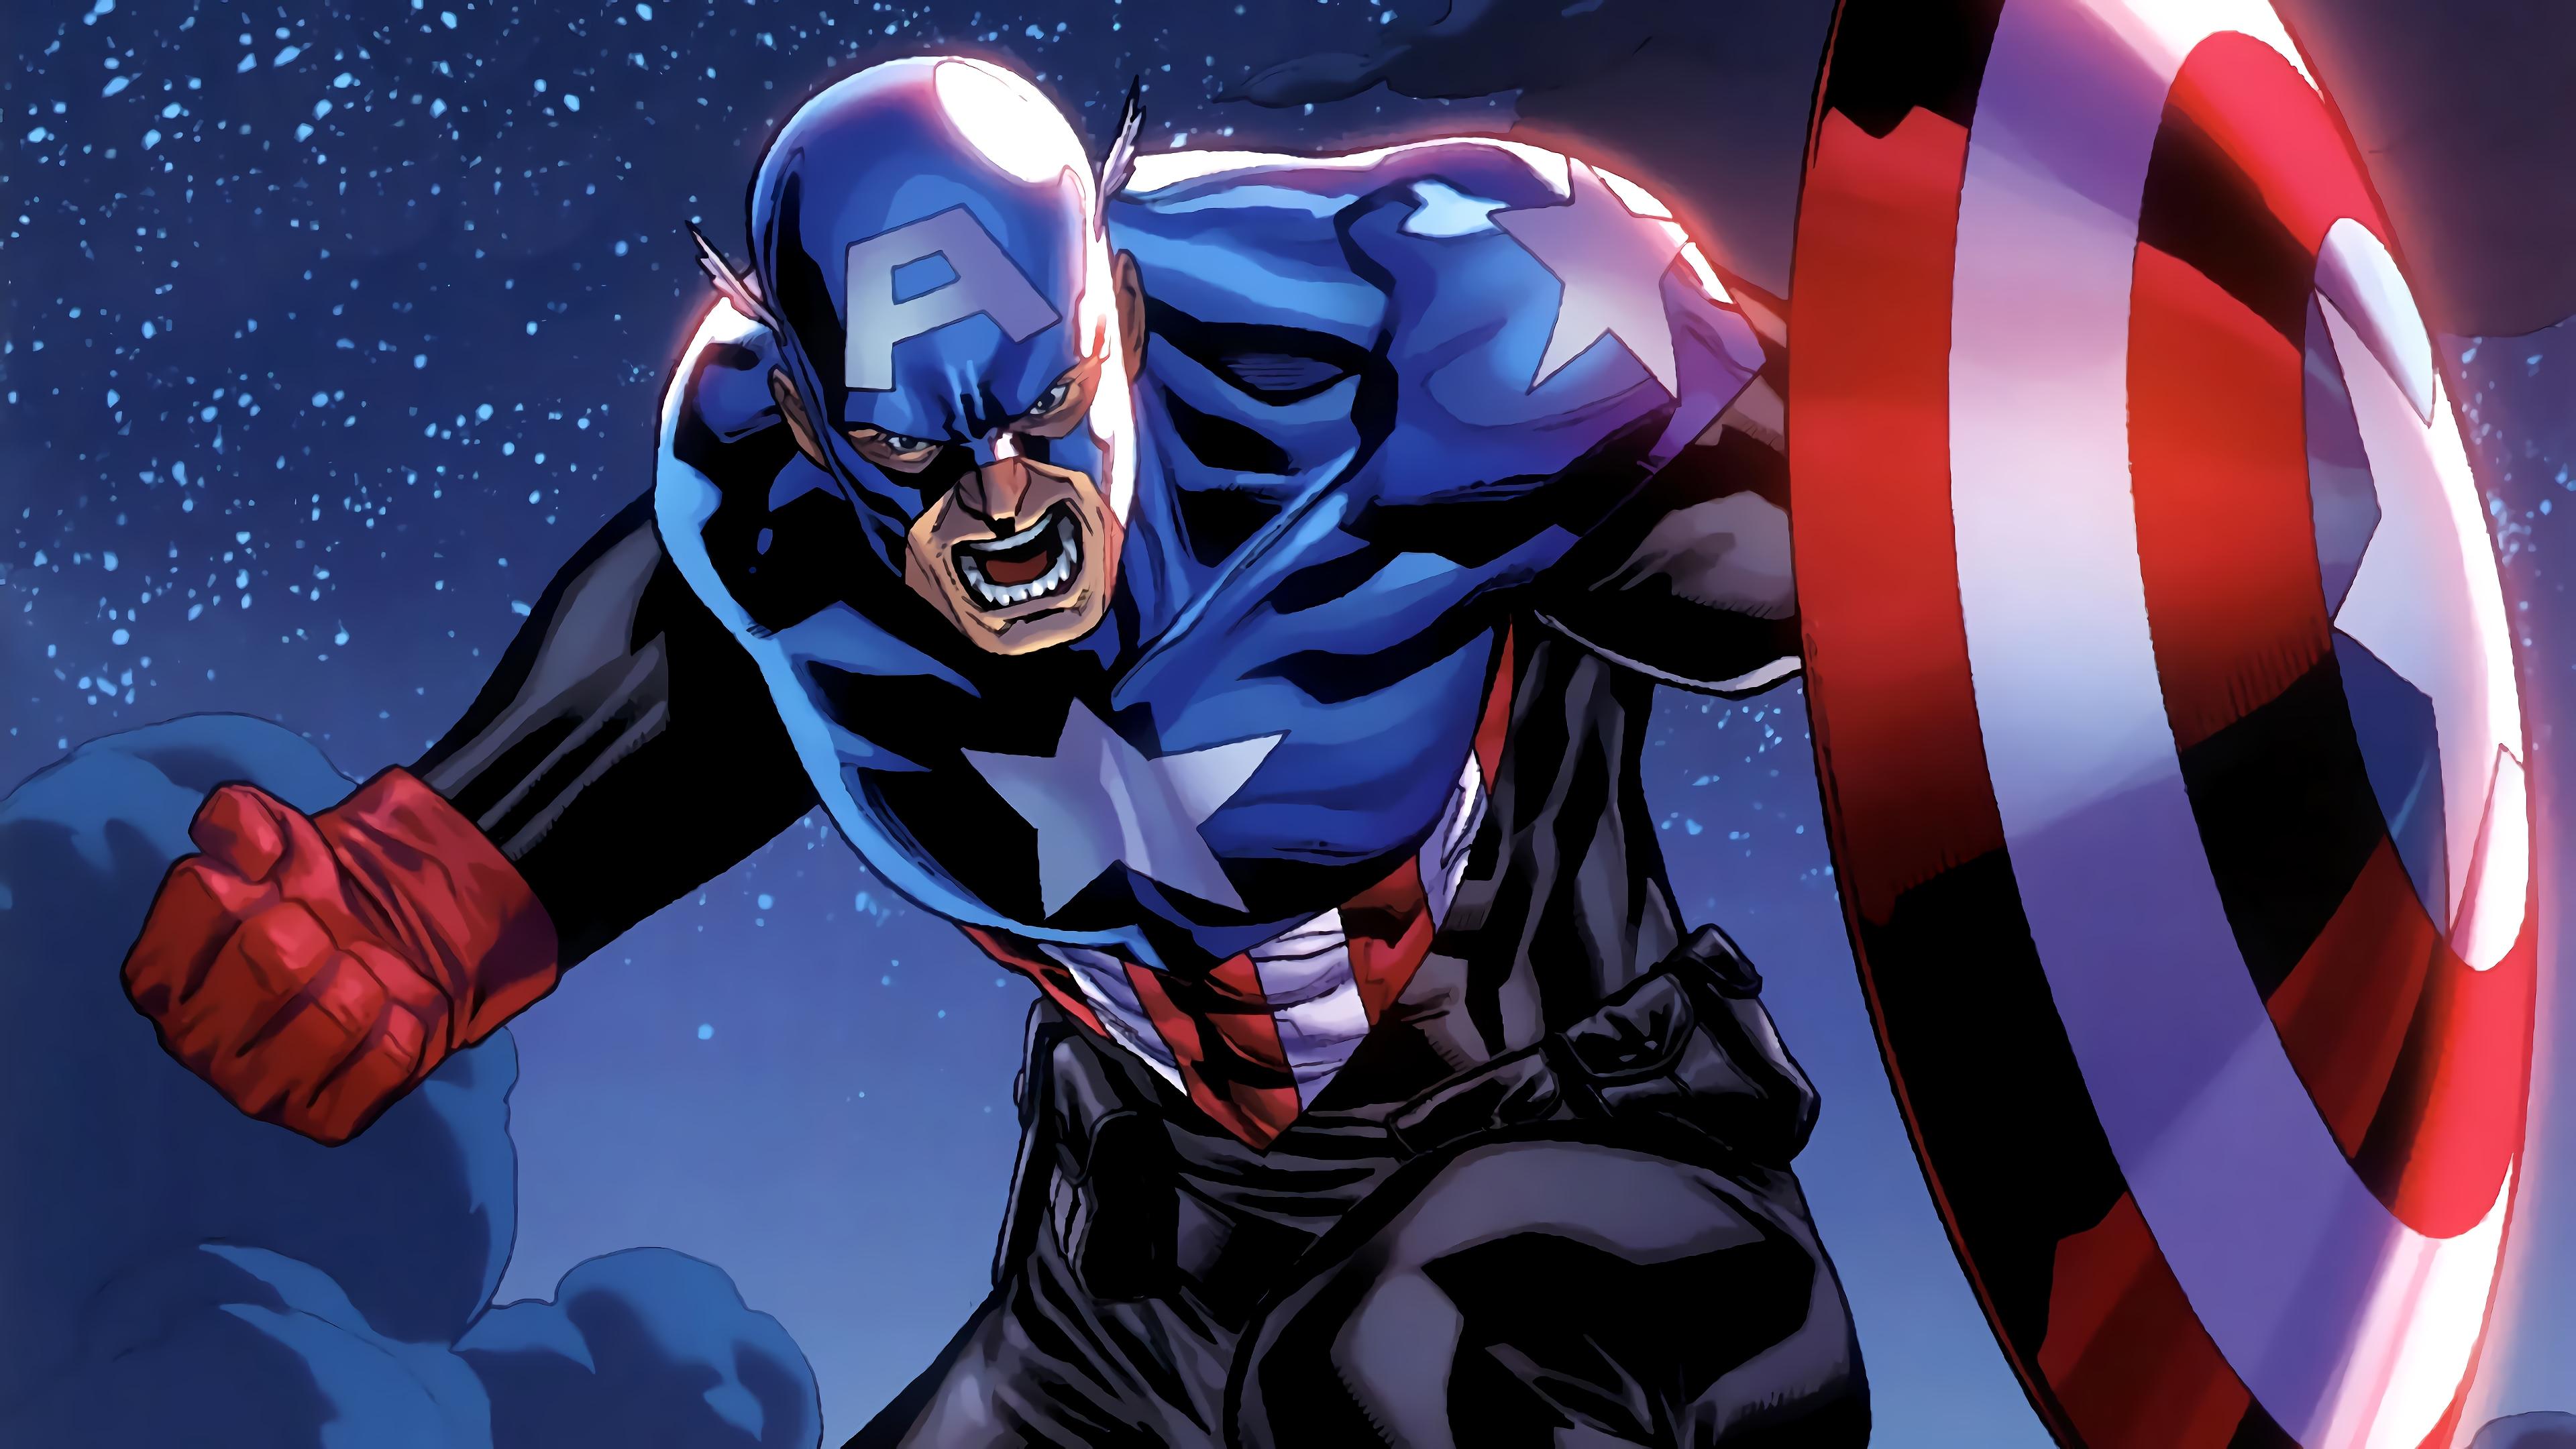 3840 x 2160 · jpeg - Captain America Marvel Comics 4K Wallpaper Marvel Comics, Comics ...